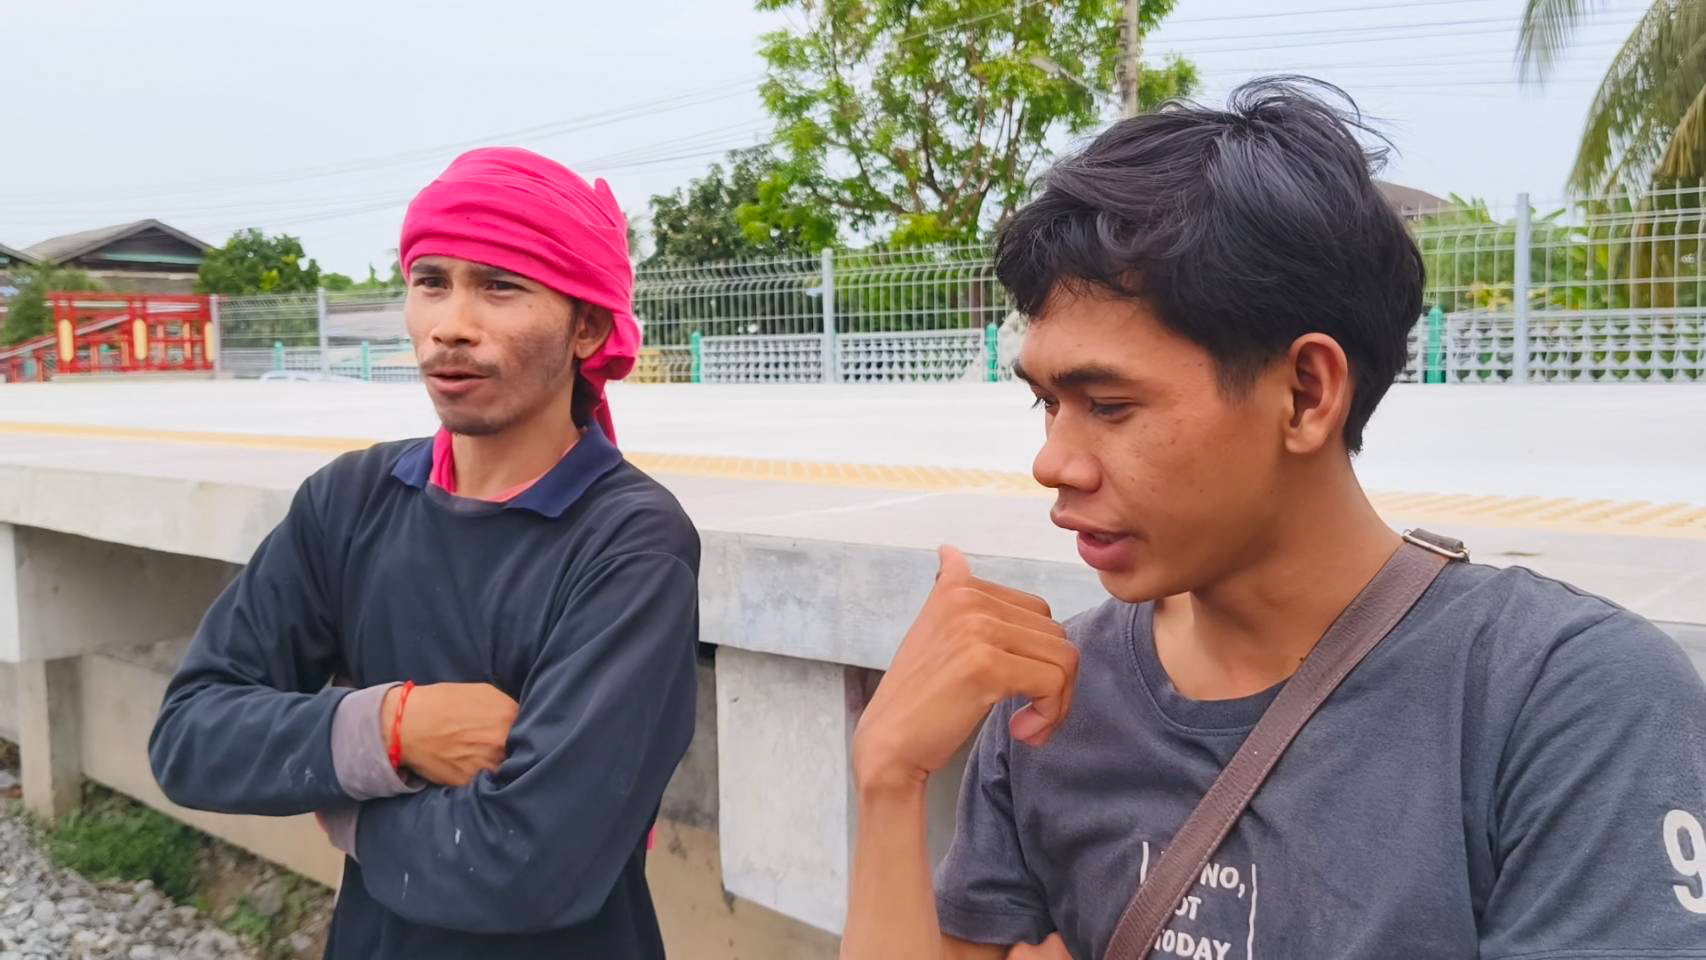 Die thailändischen Bahnarbeiter, die die Leiche gefunden haben